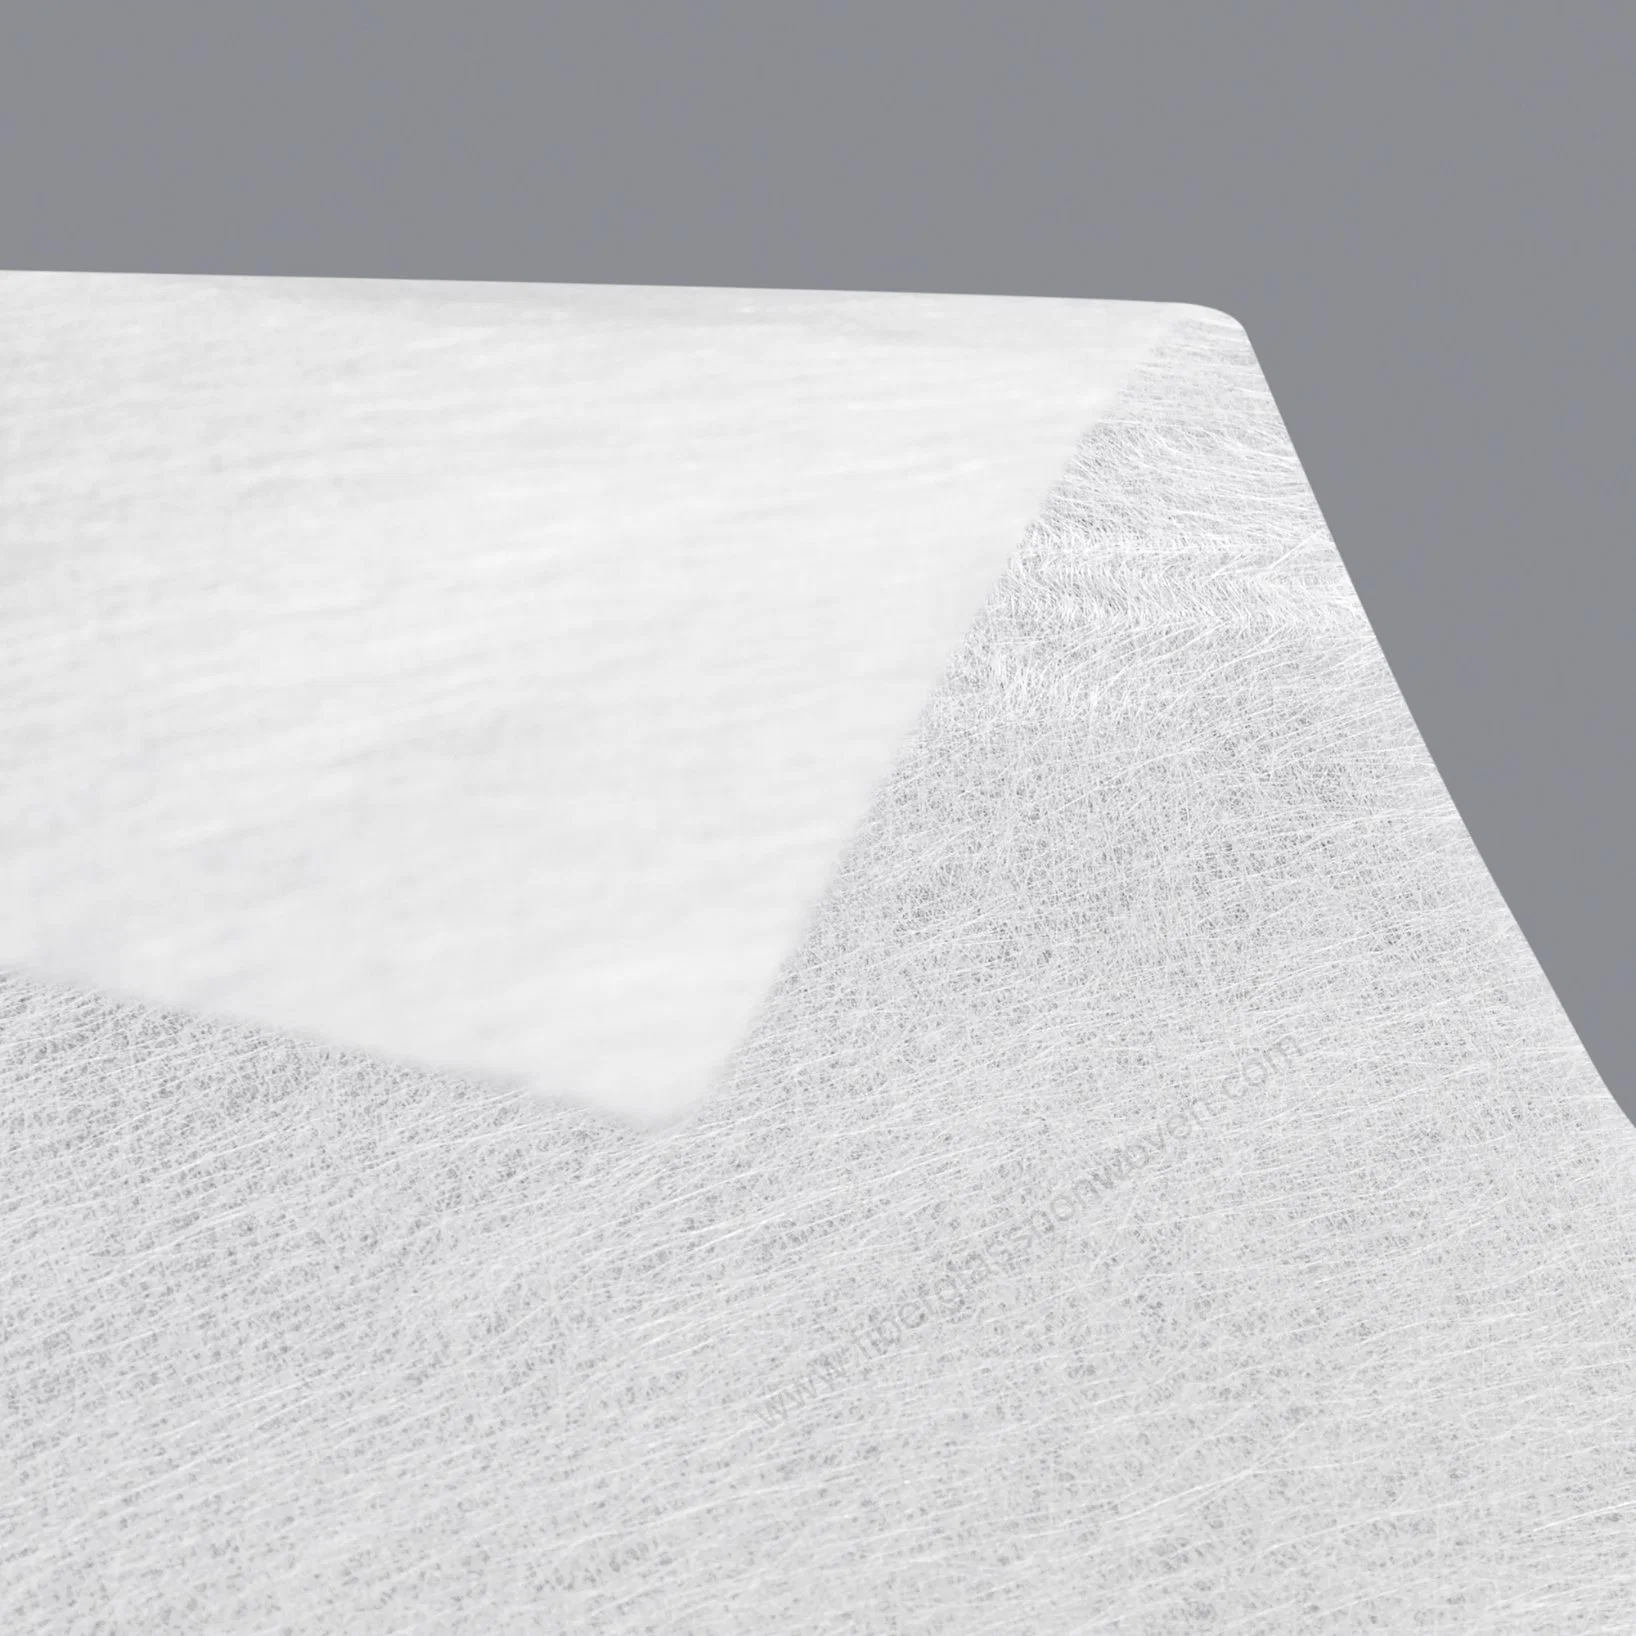 Superfície de fibra de tapete de tecidos como material de base para acondicionamento anticorrosão